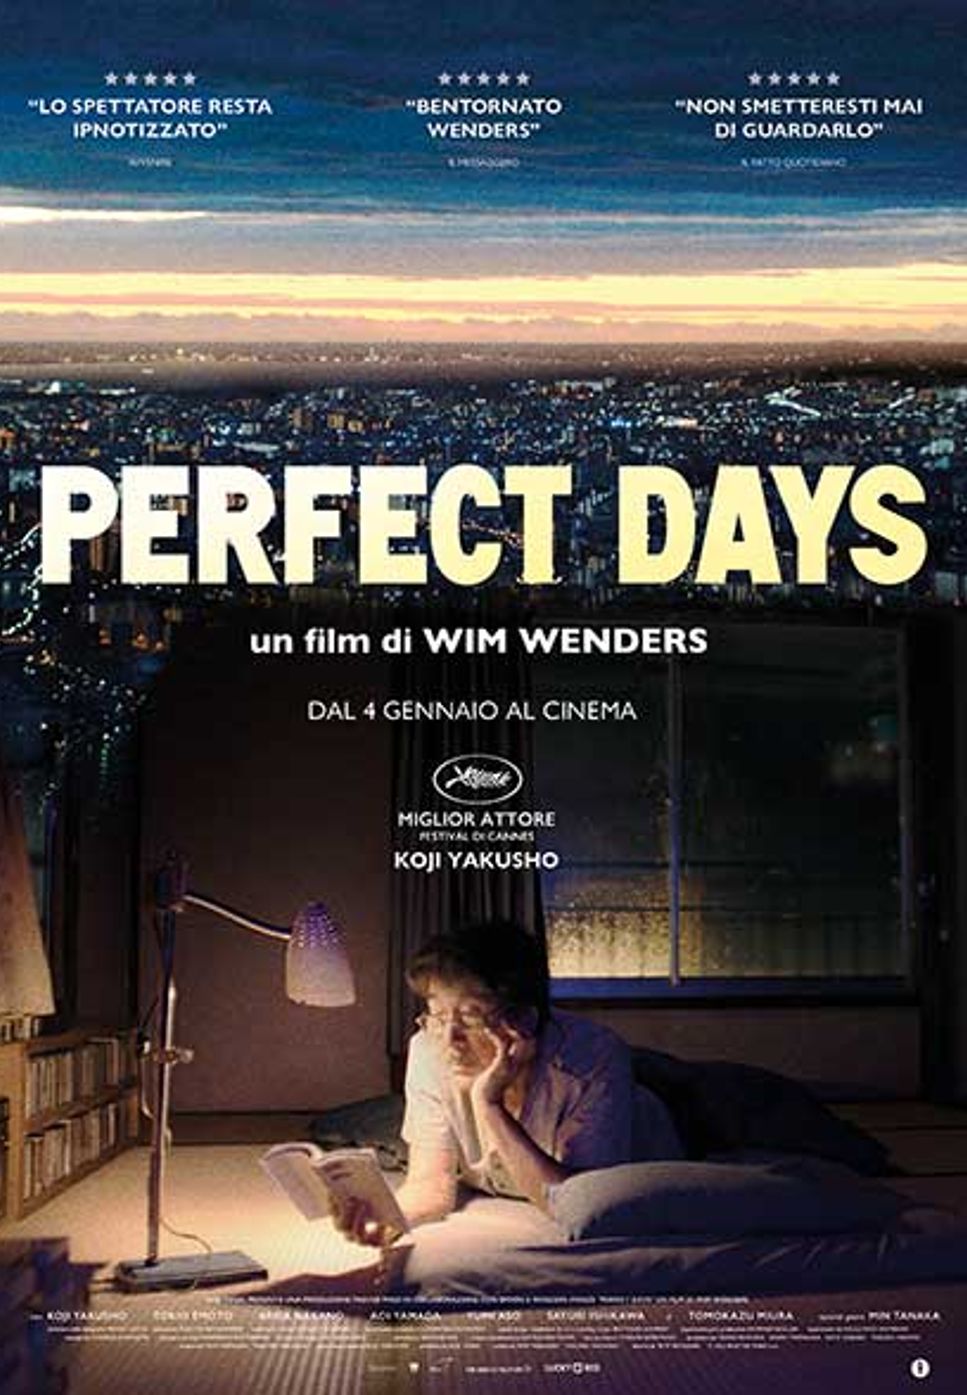 Lou Reed - Perfect Day (Komorebi Version) by Pei-Ying Pan